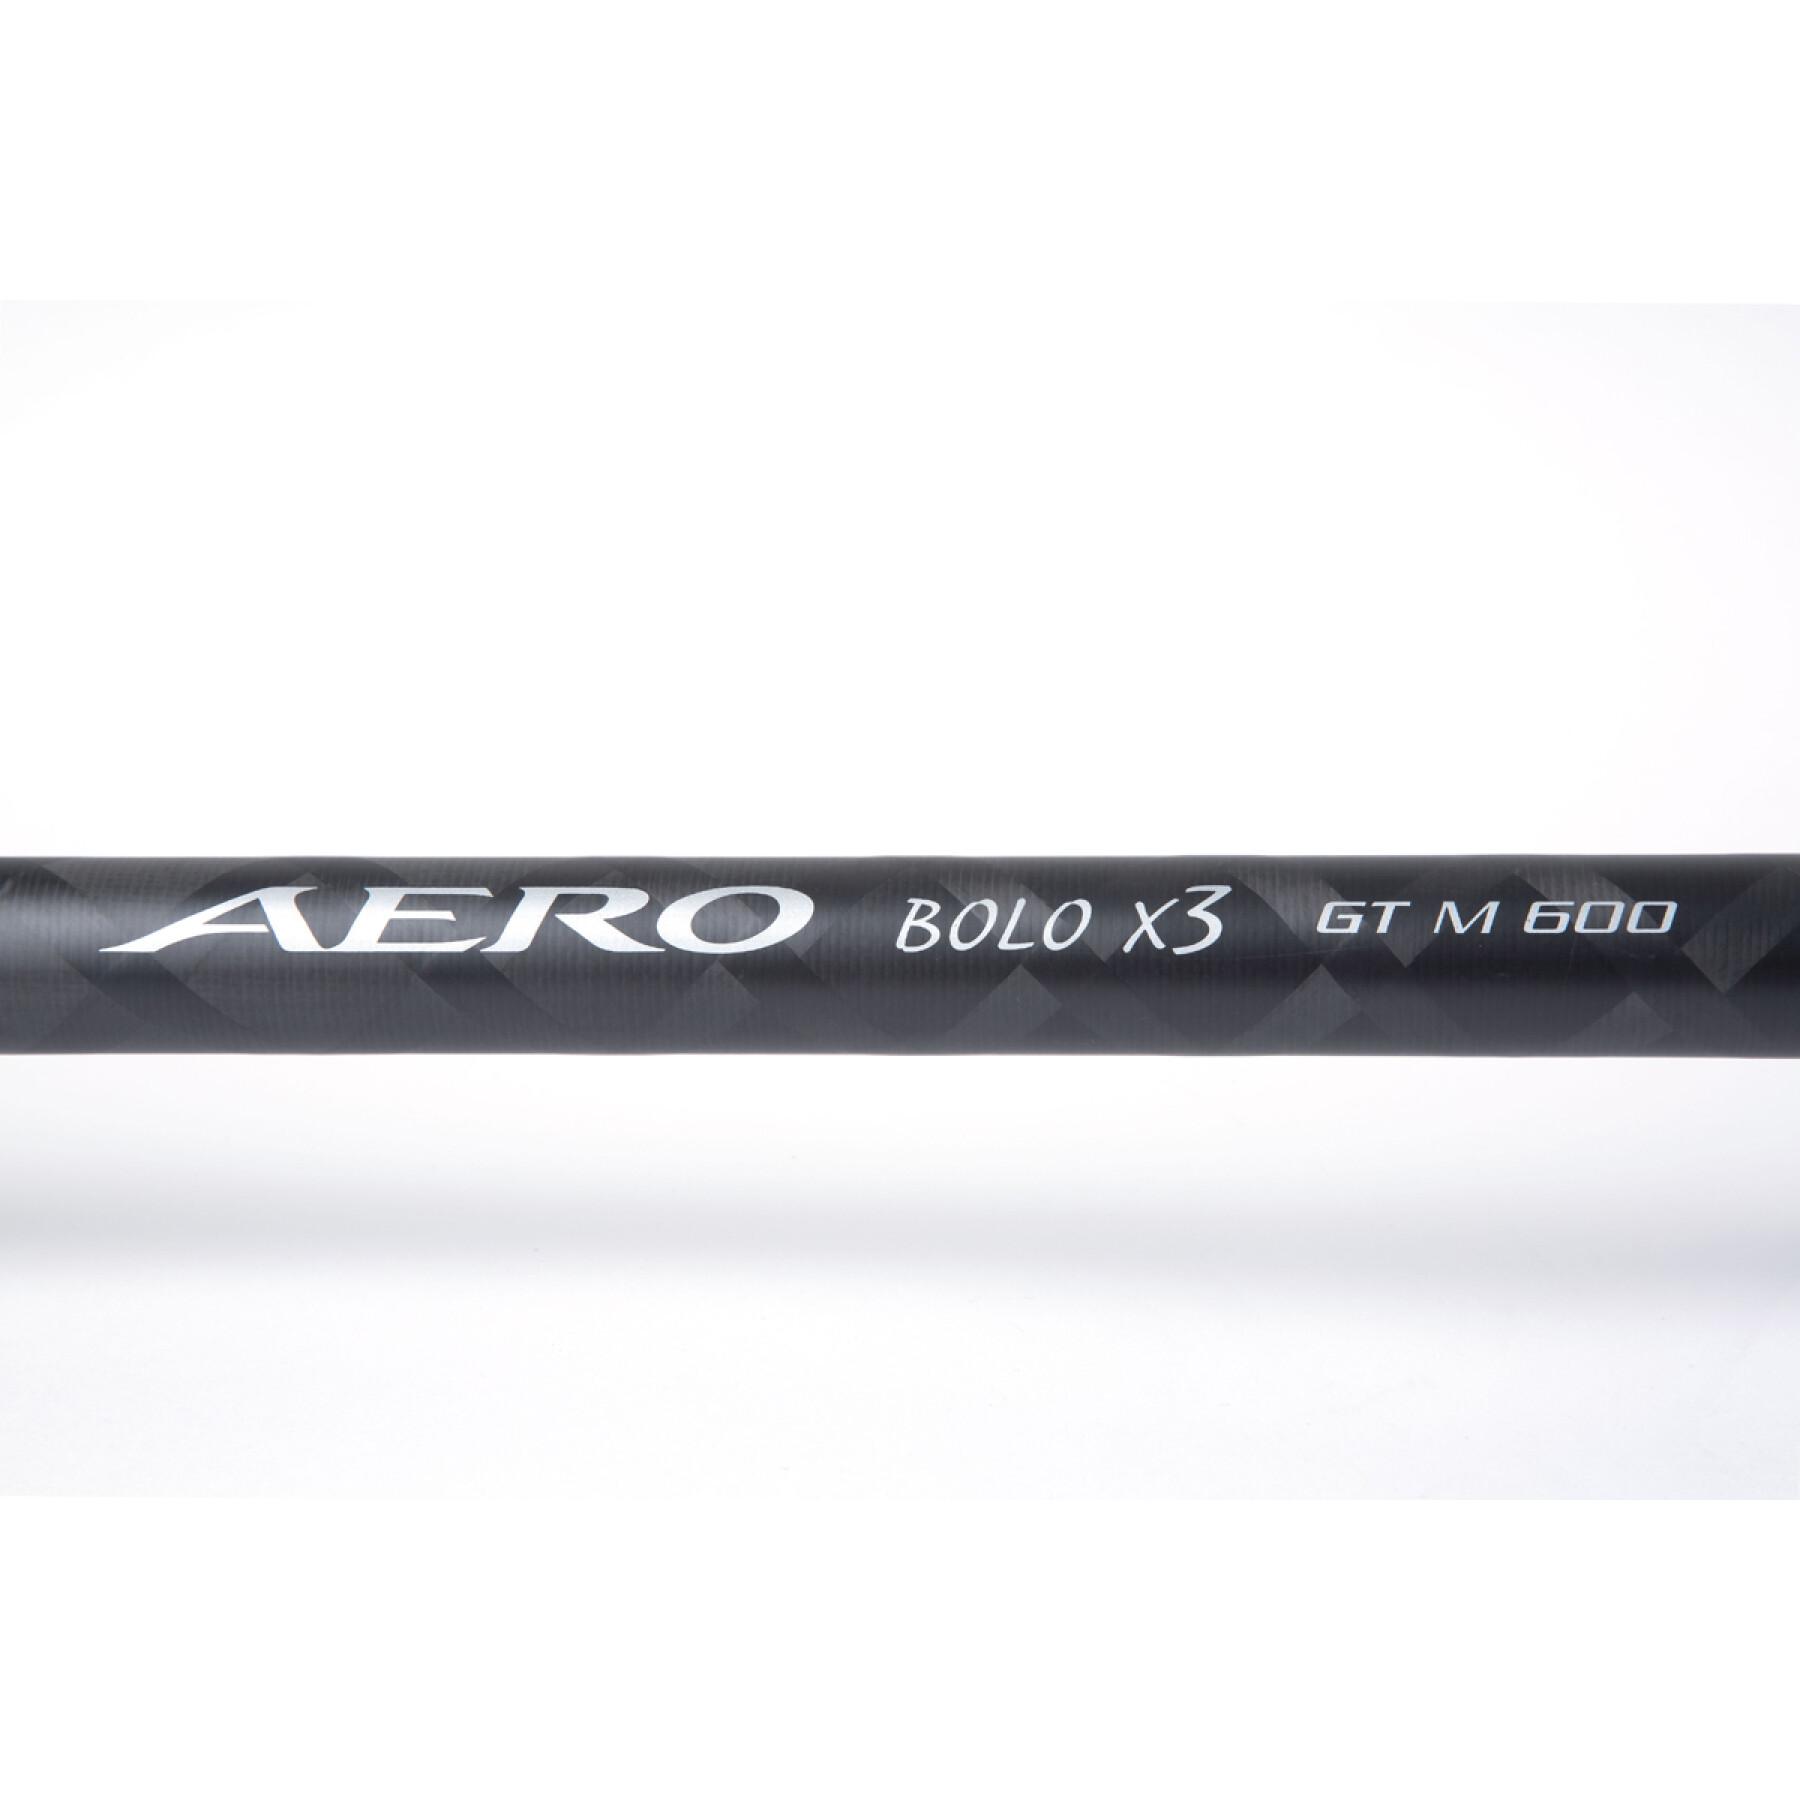 Pértiga telescópica Shimano Aero X3 Bolo GT 18 g